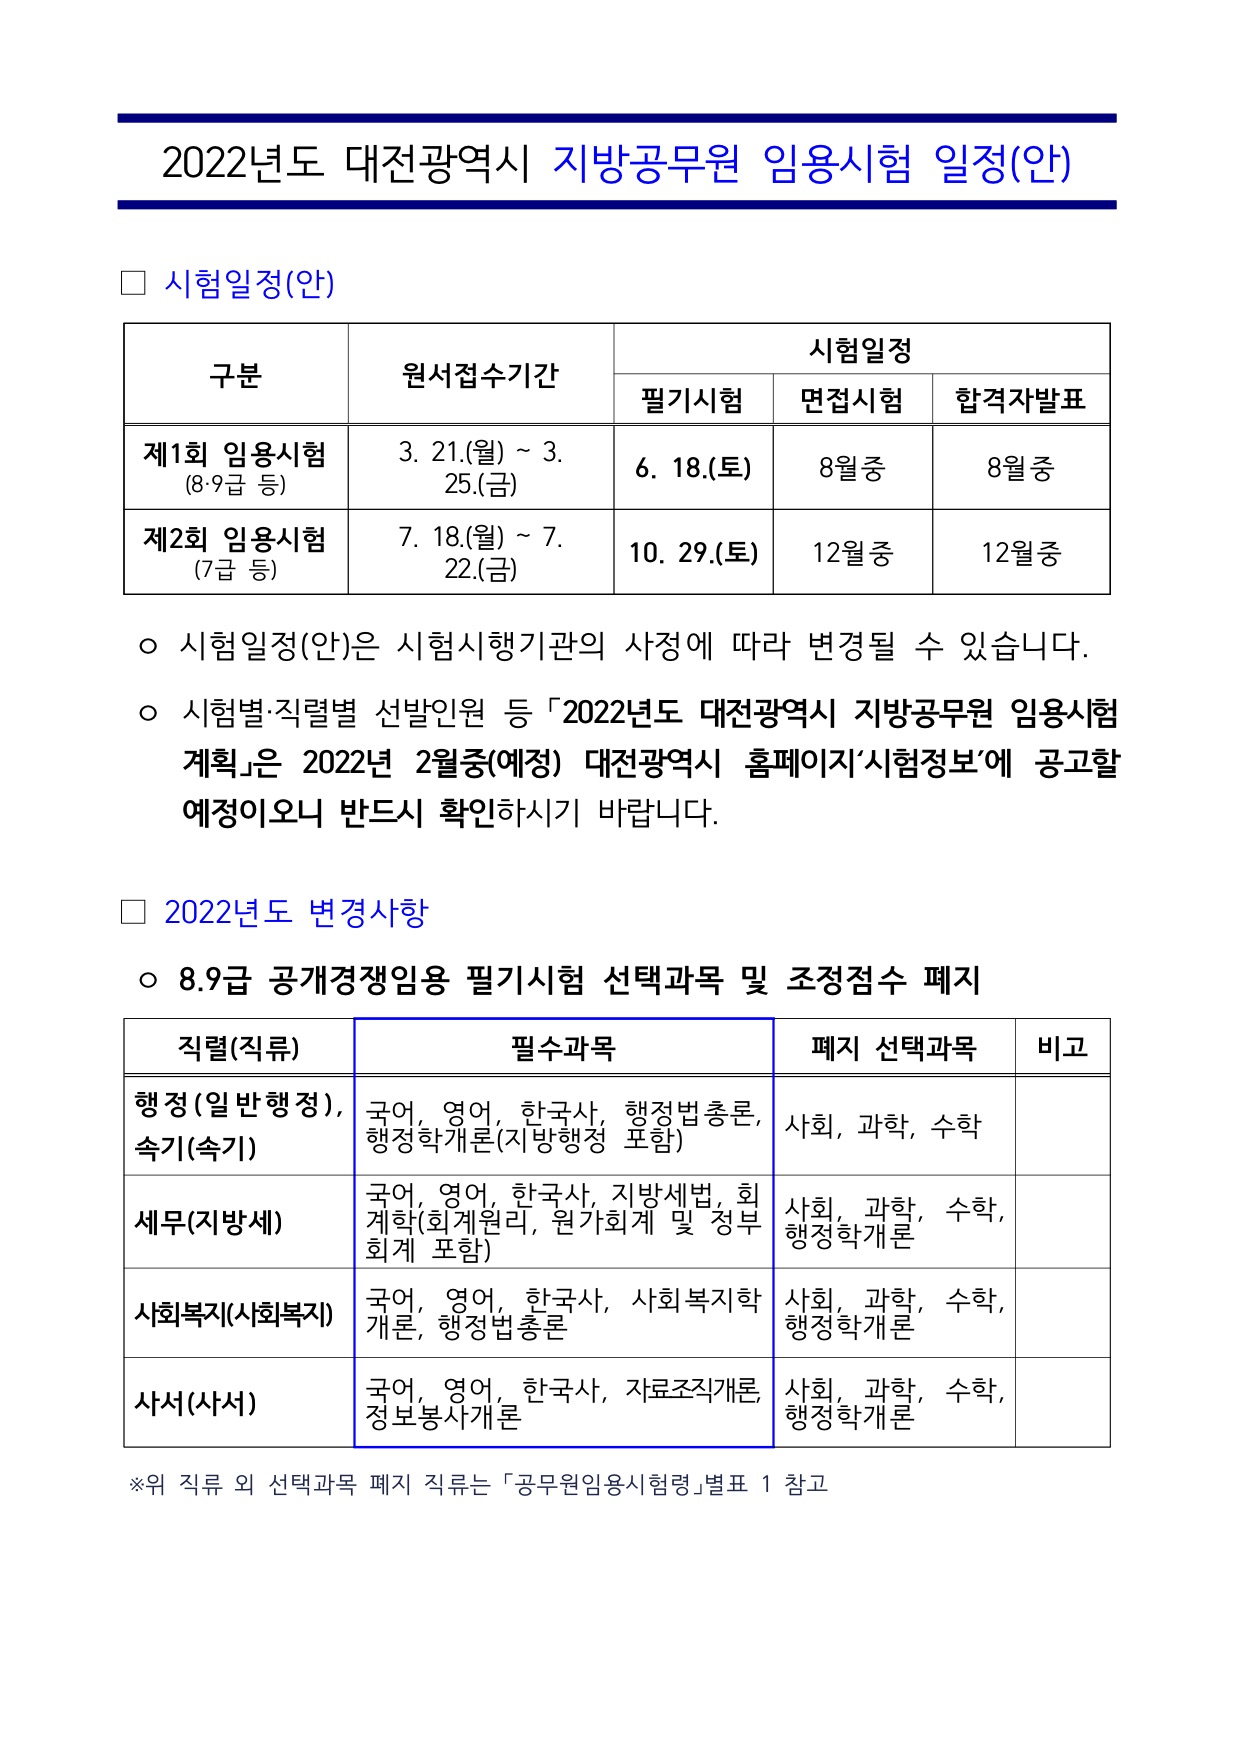 공기출 - 2022년도 대전광역시 지방공무원 임용시험 일정(안)